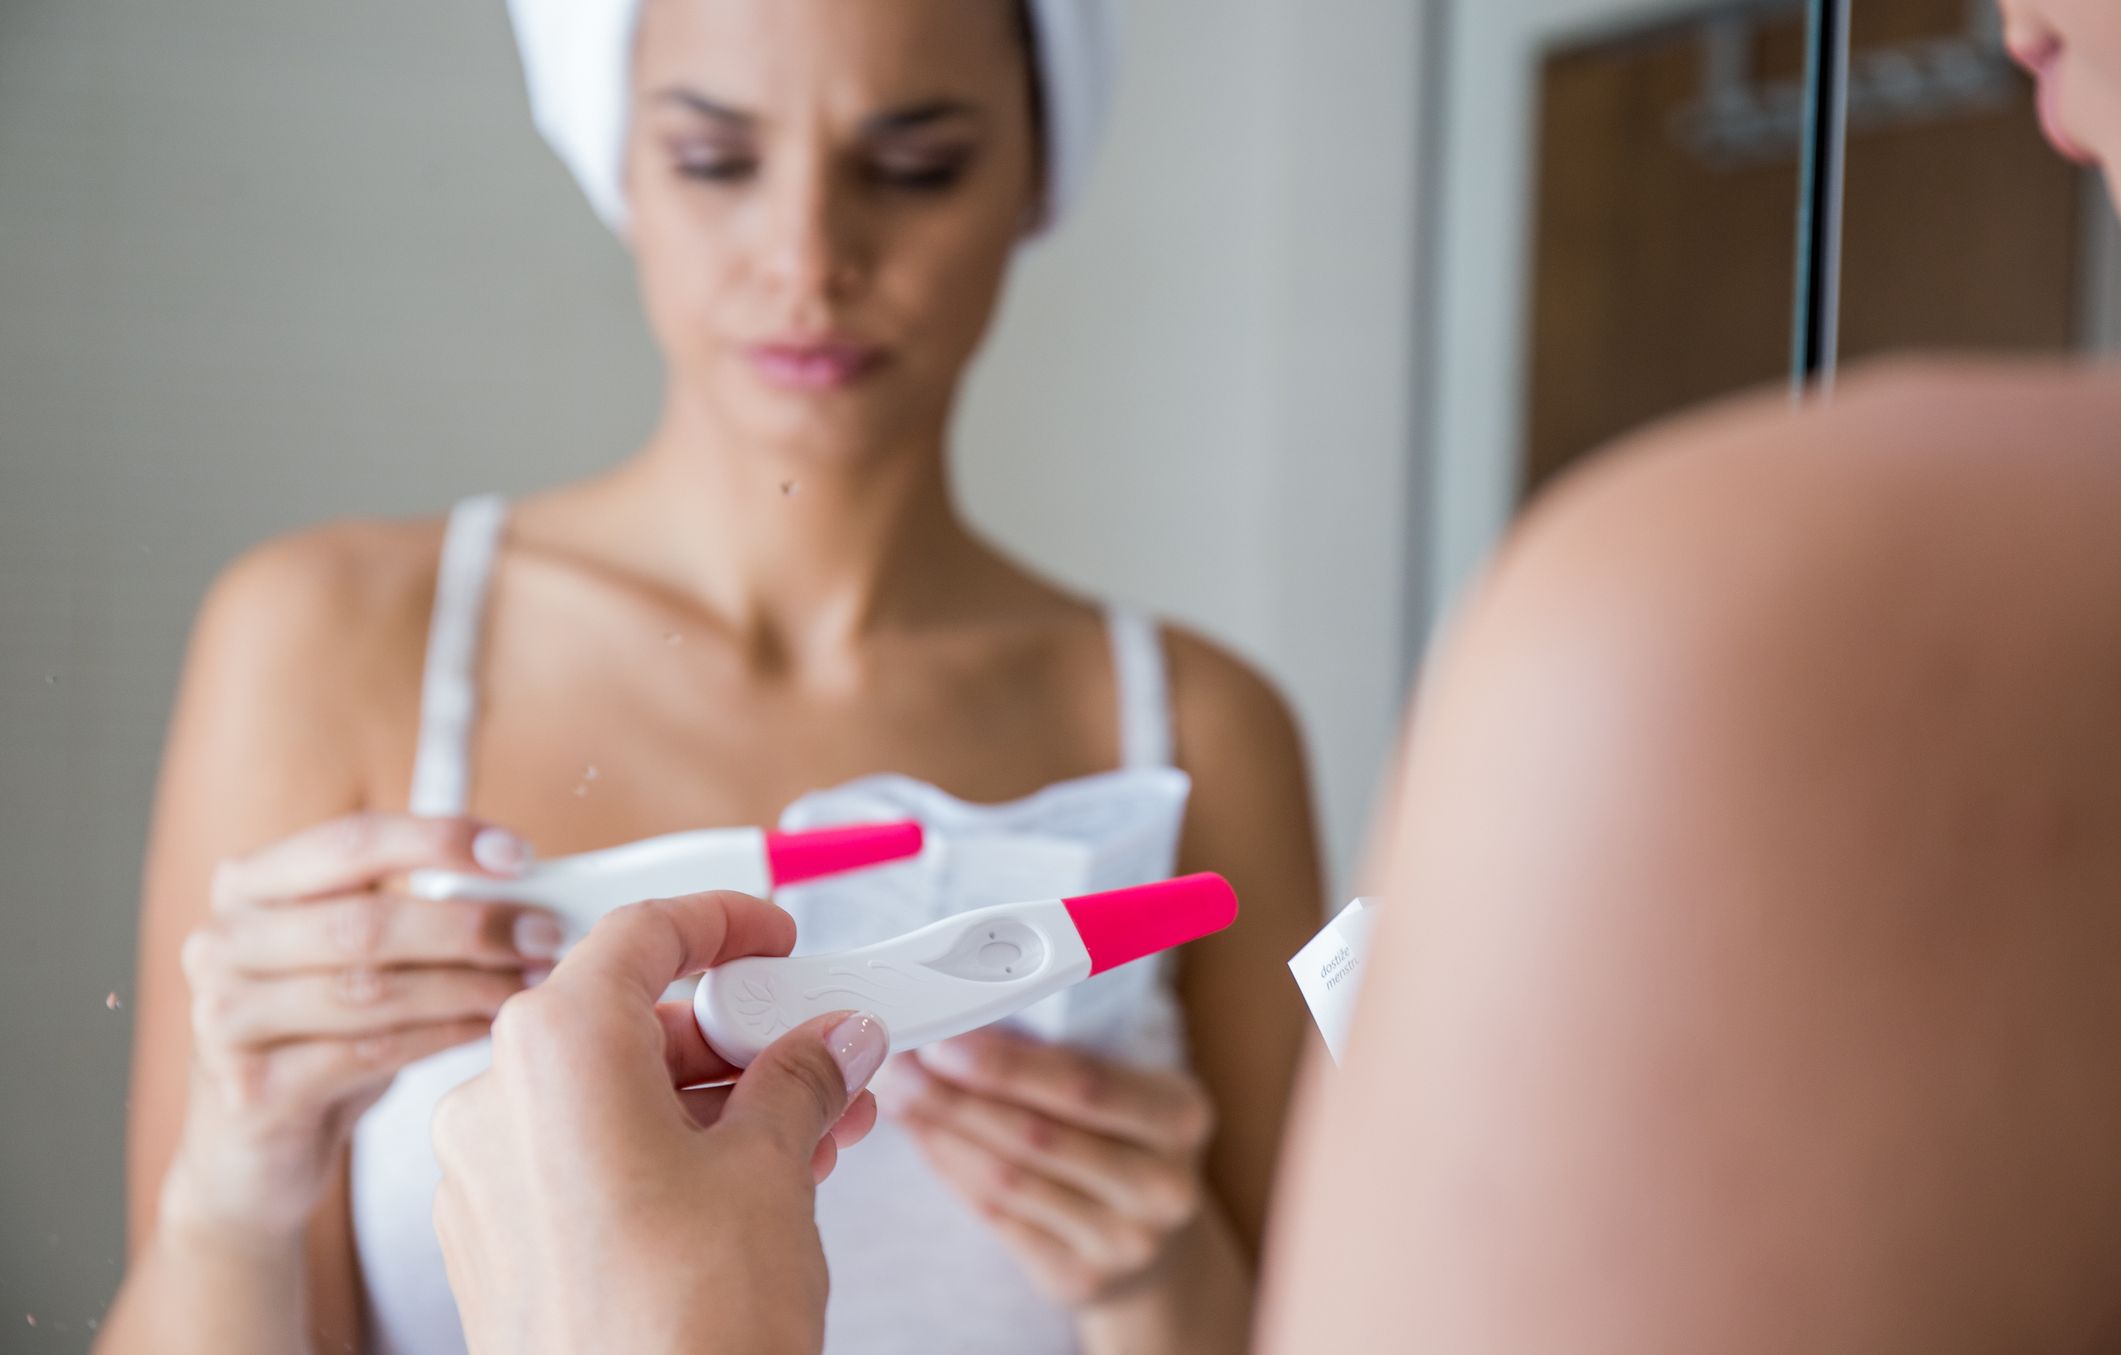 Descubren errores inesperados en los test de embarazo